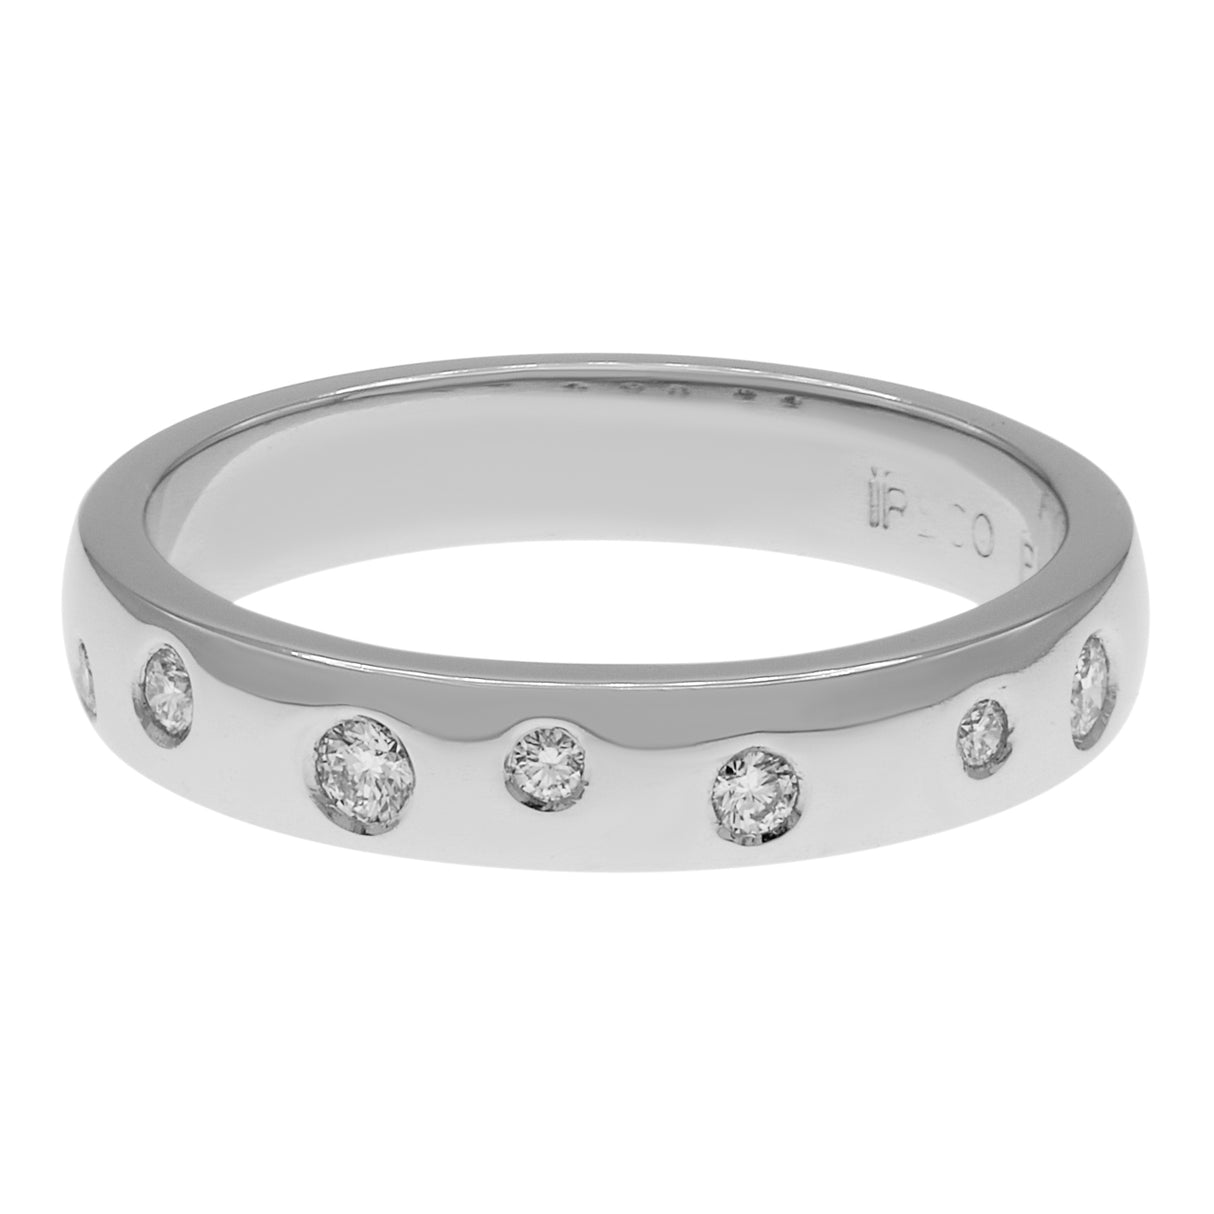 Platinum 0.20 Carat Diamond Ring